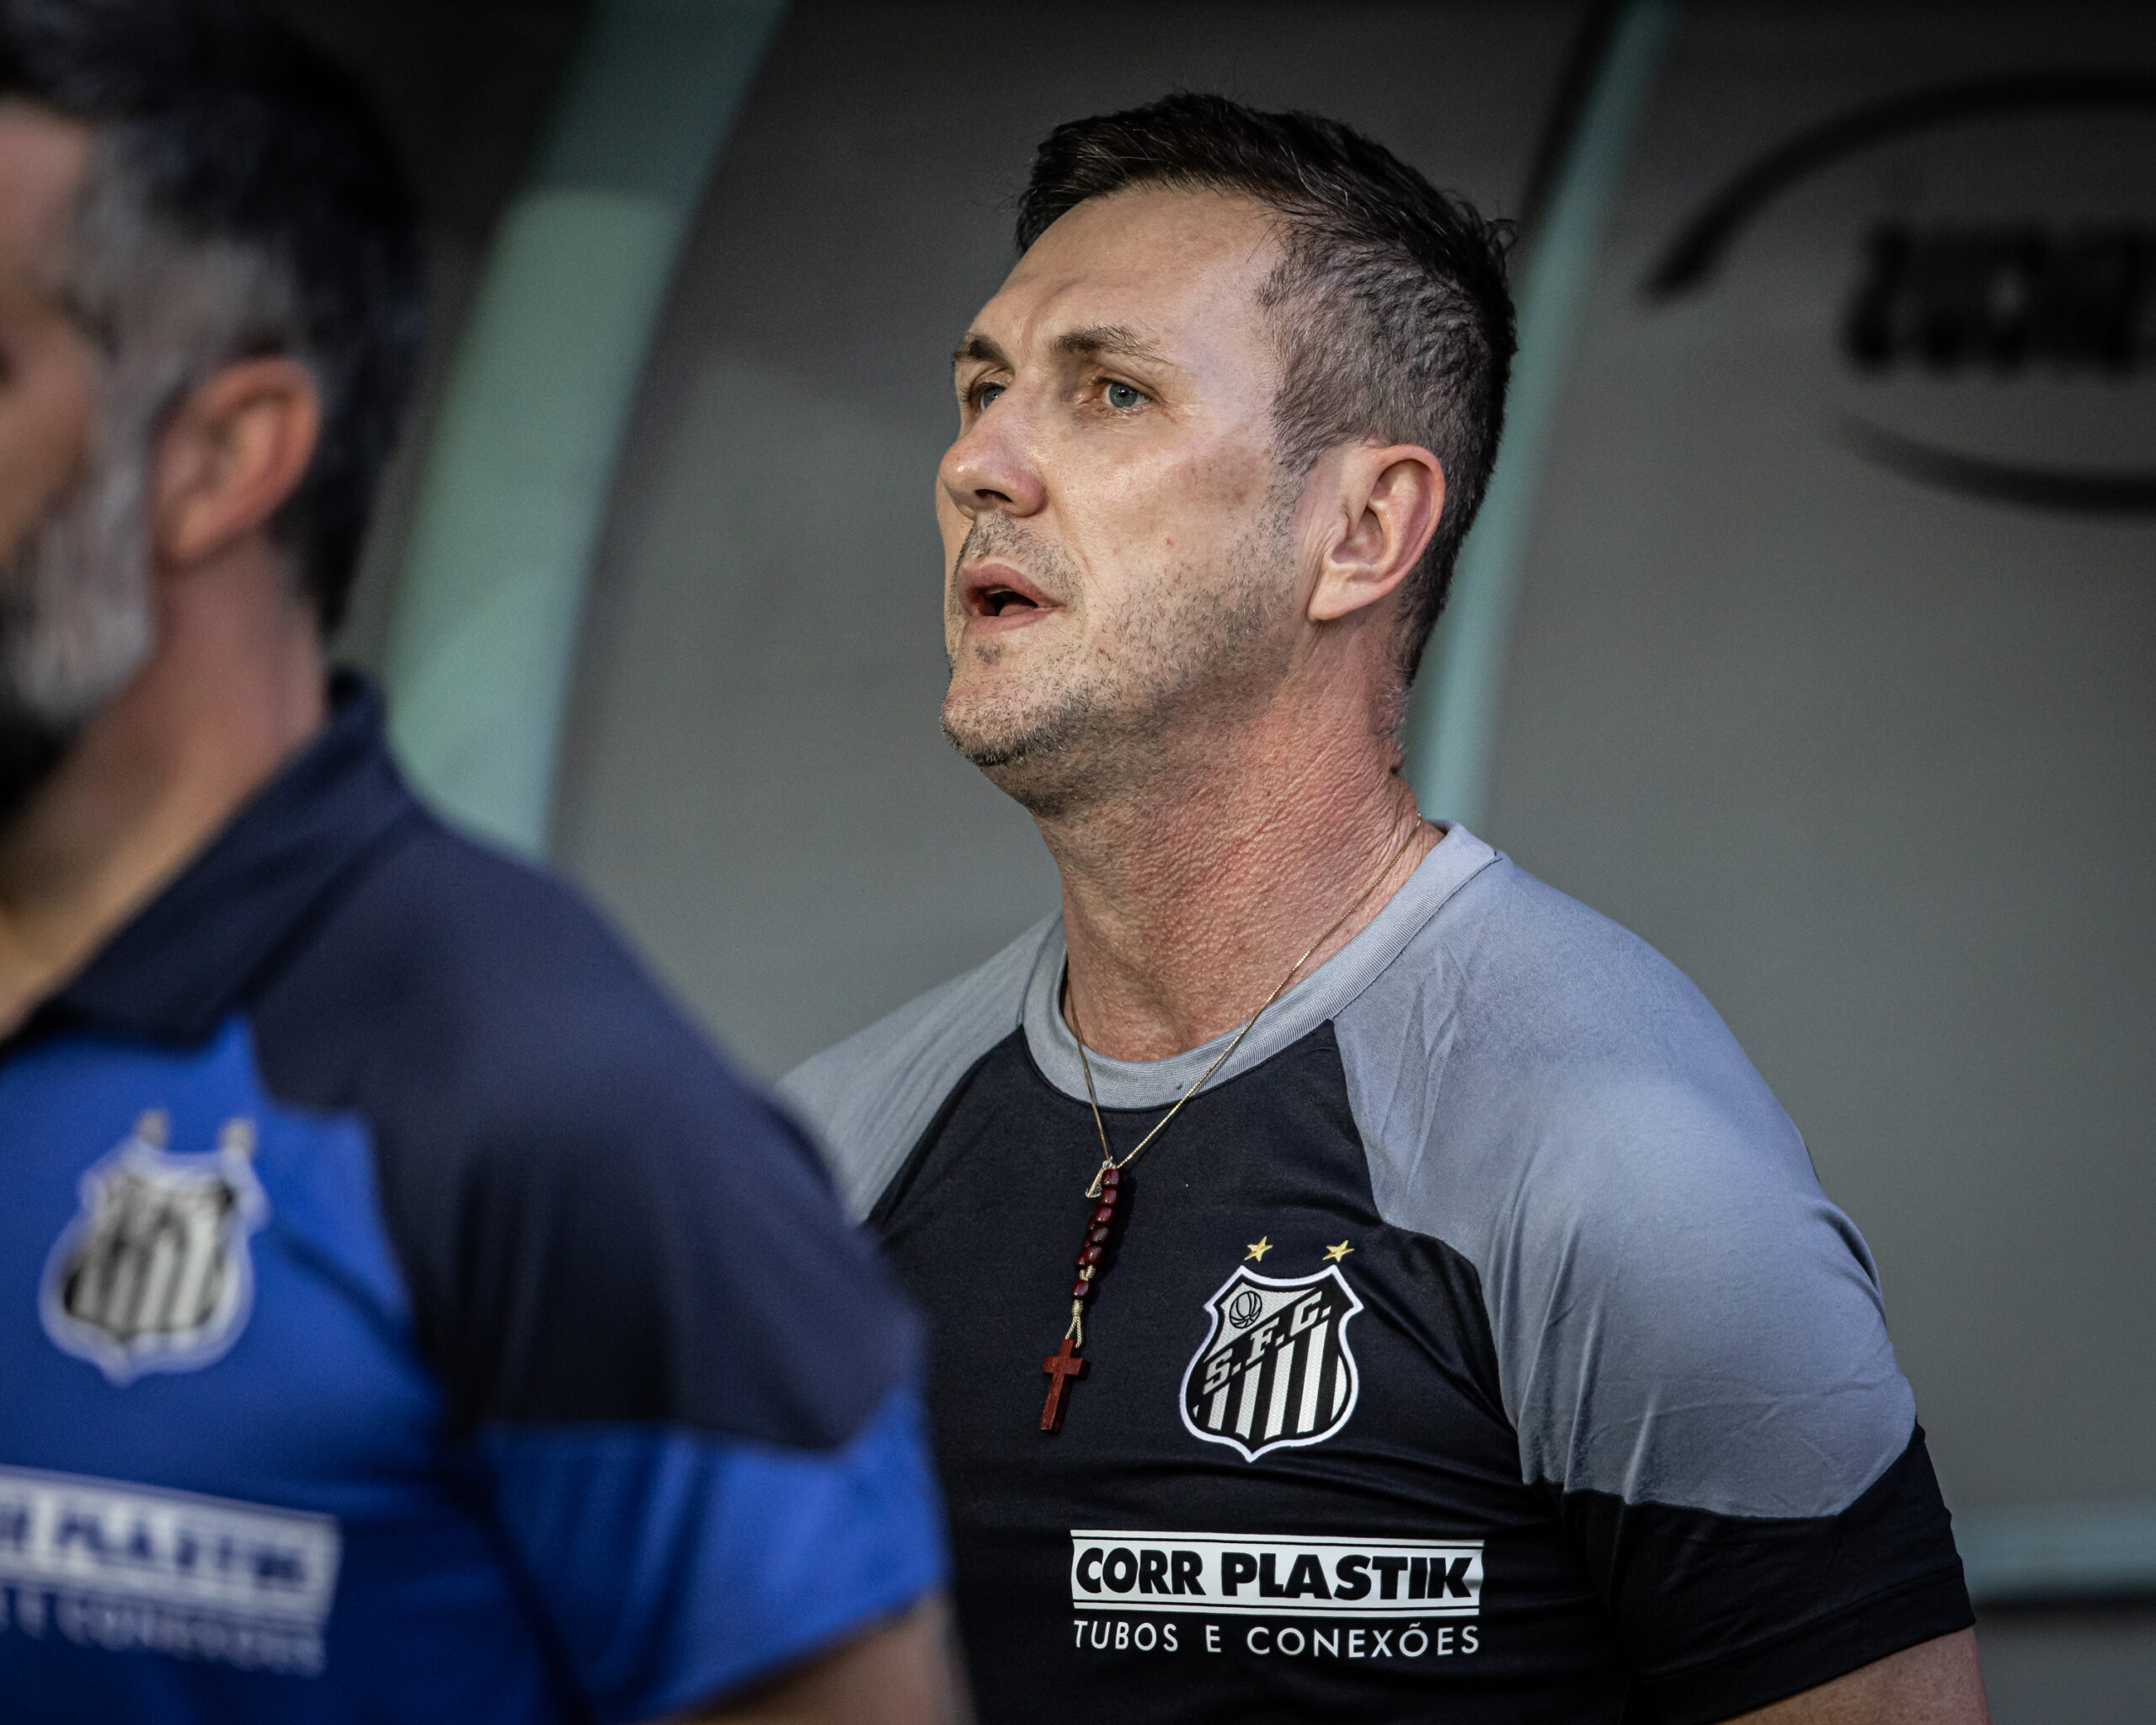 Santos arrranca empate com Botafogo, que chega a 8 jogos sem vencer - Folha  PE